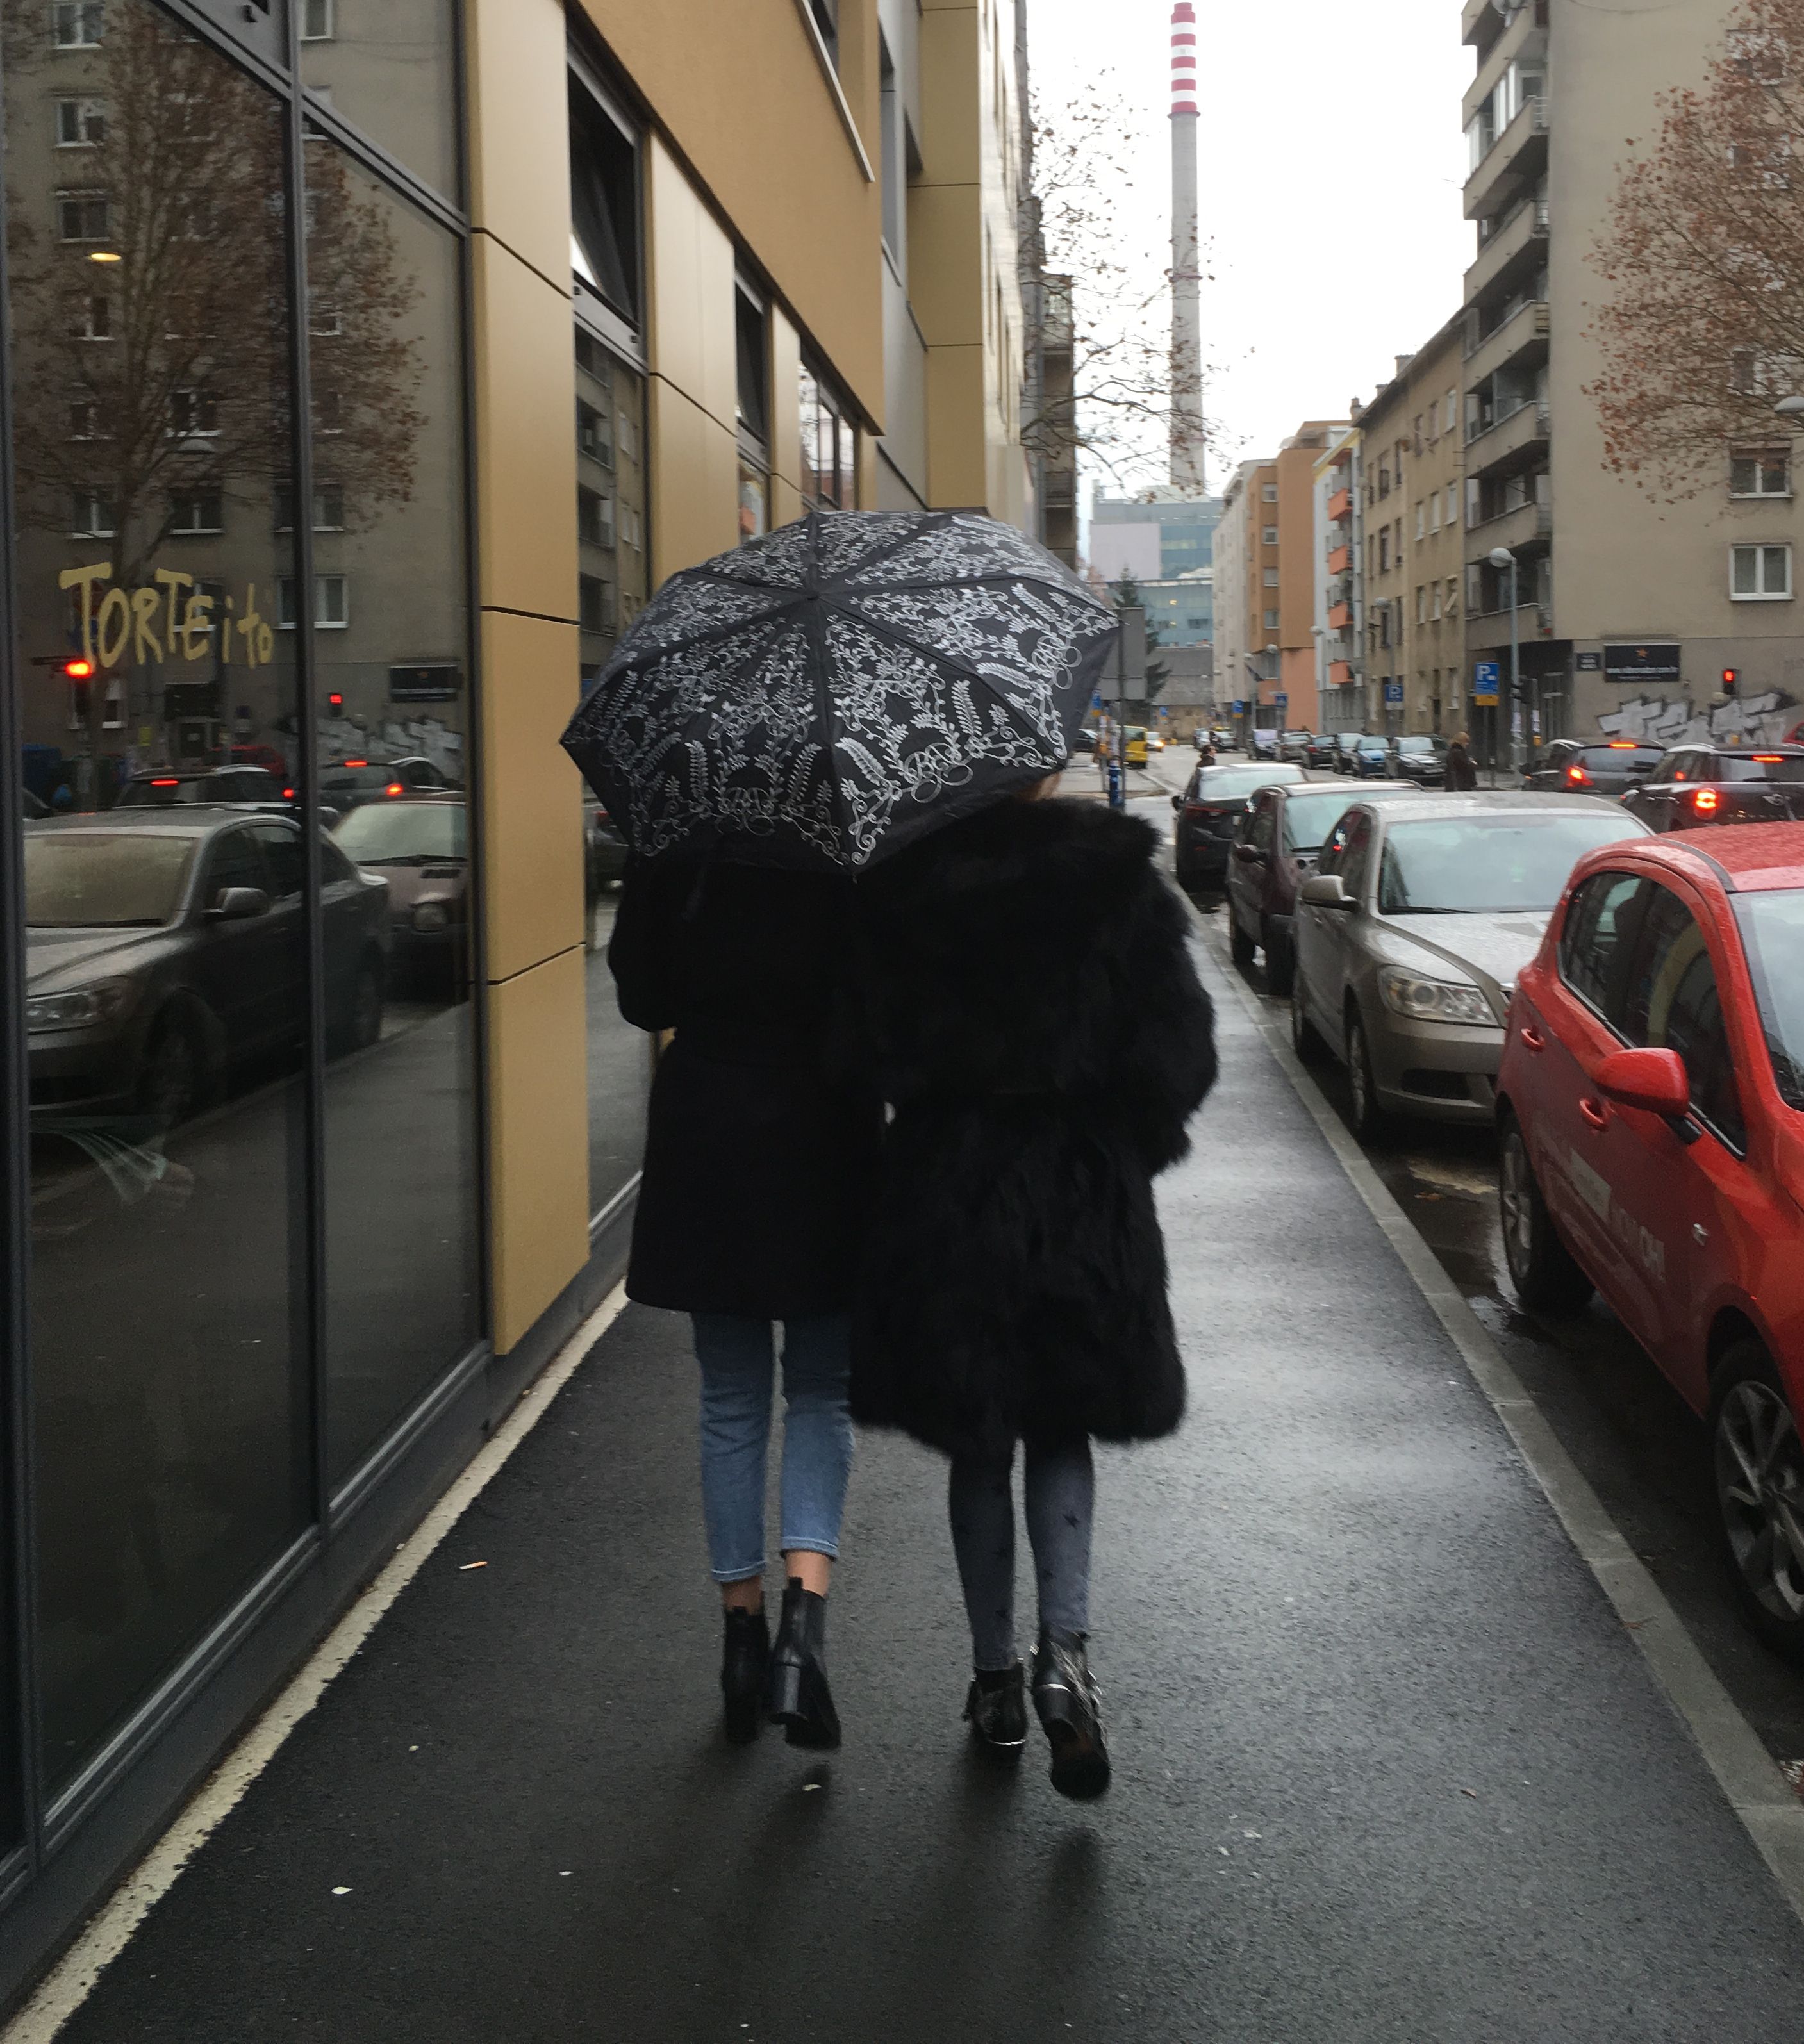 Boudoir i Diva Style kišobran je najpoželjniji asesoar sezone